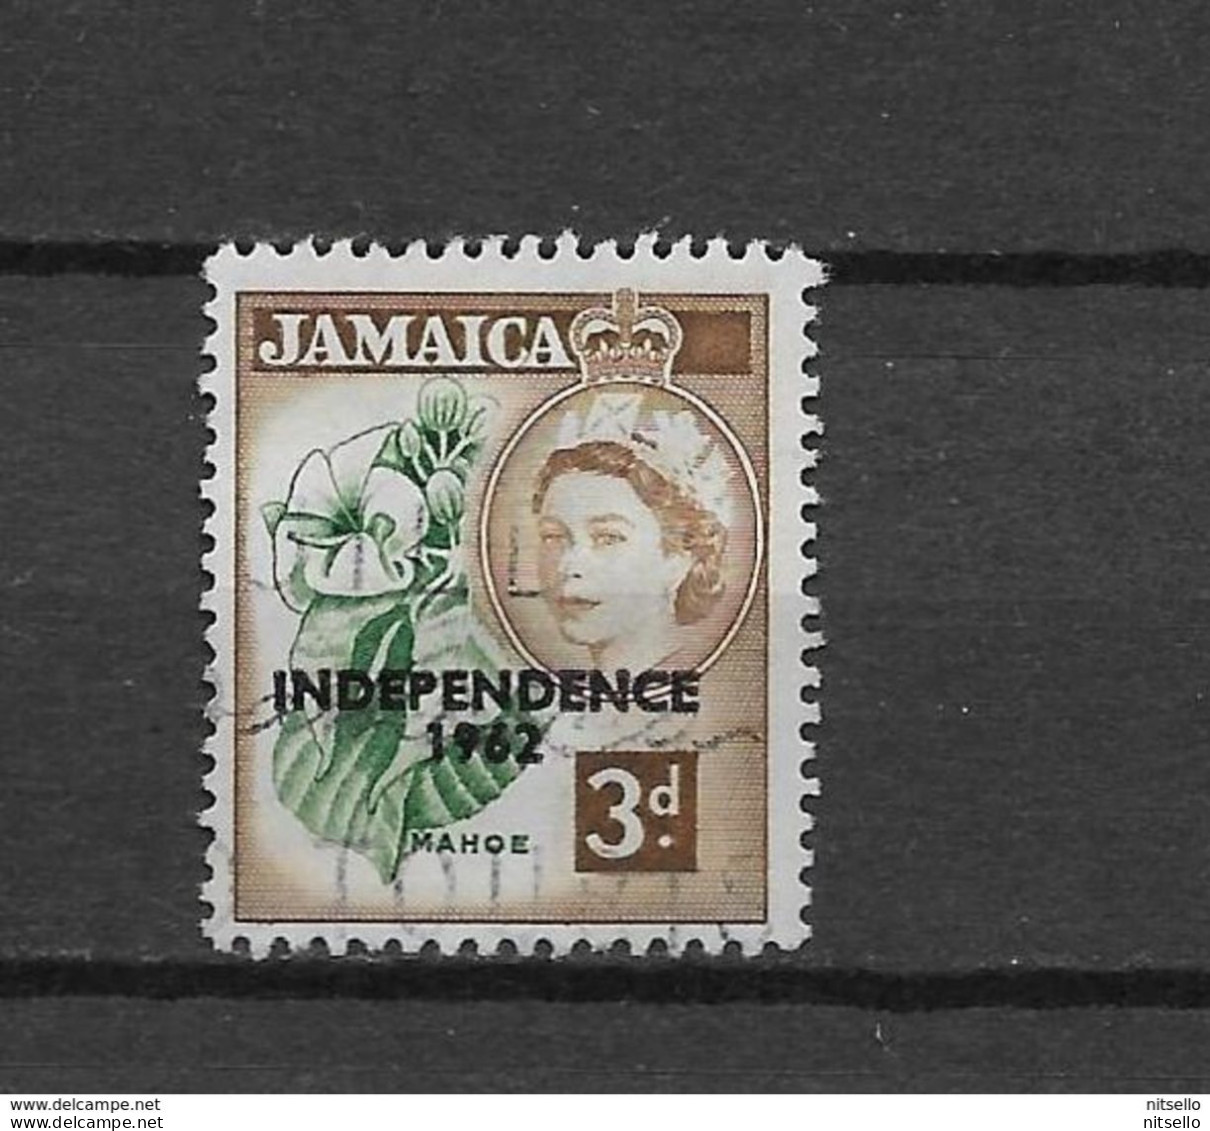 LOTE 1991  ///  (C010)   JAMAICA 1962   YVERT Nº: 191 - Jamaique (1962-...)